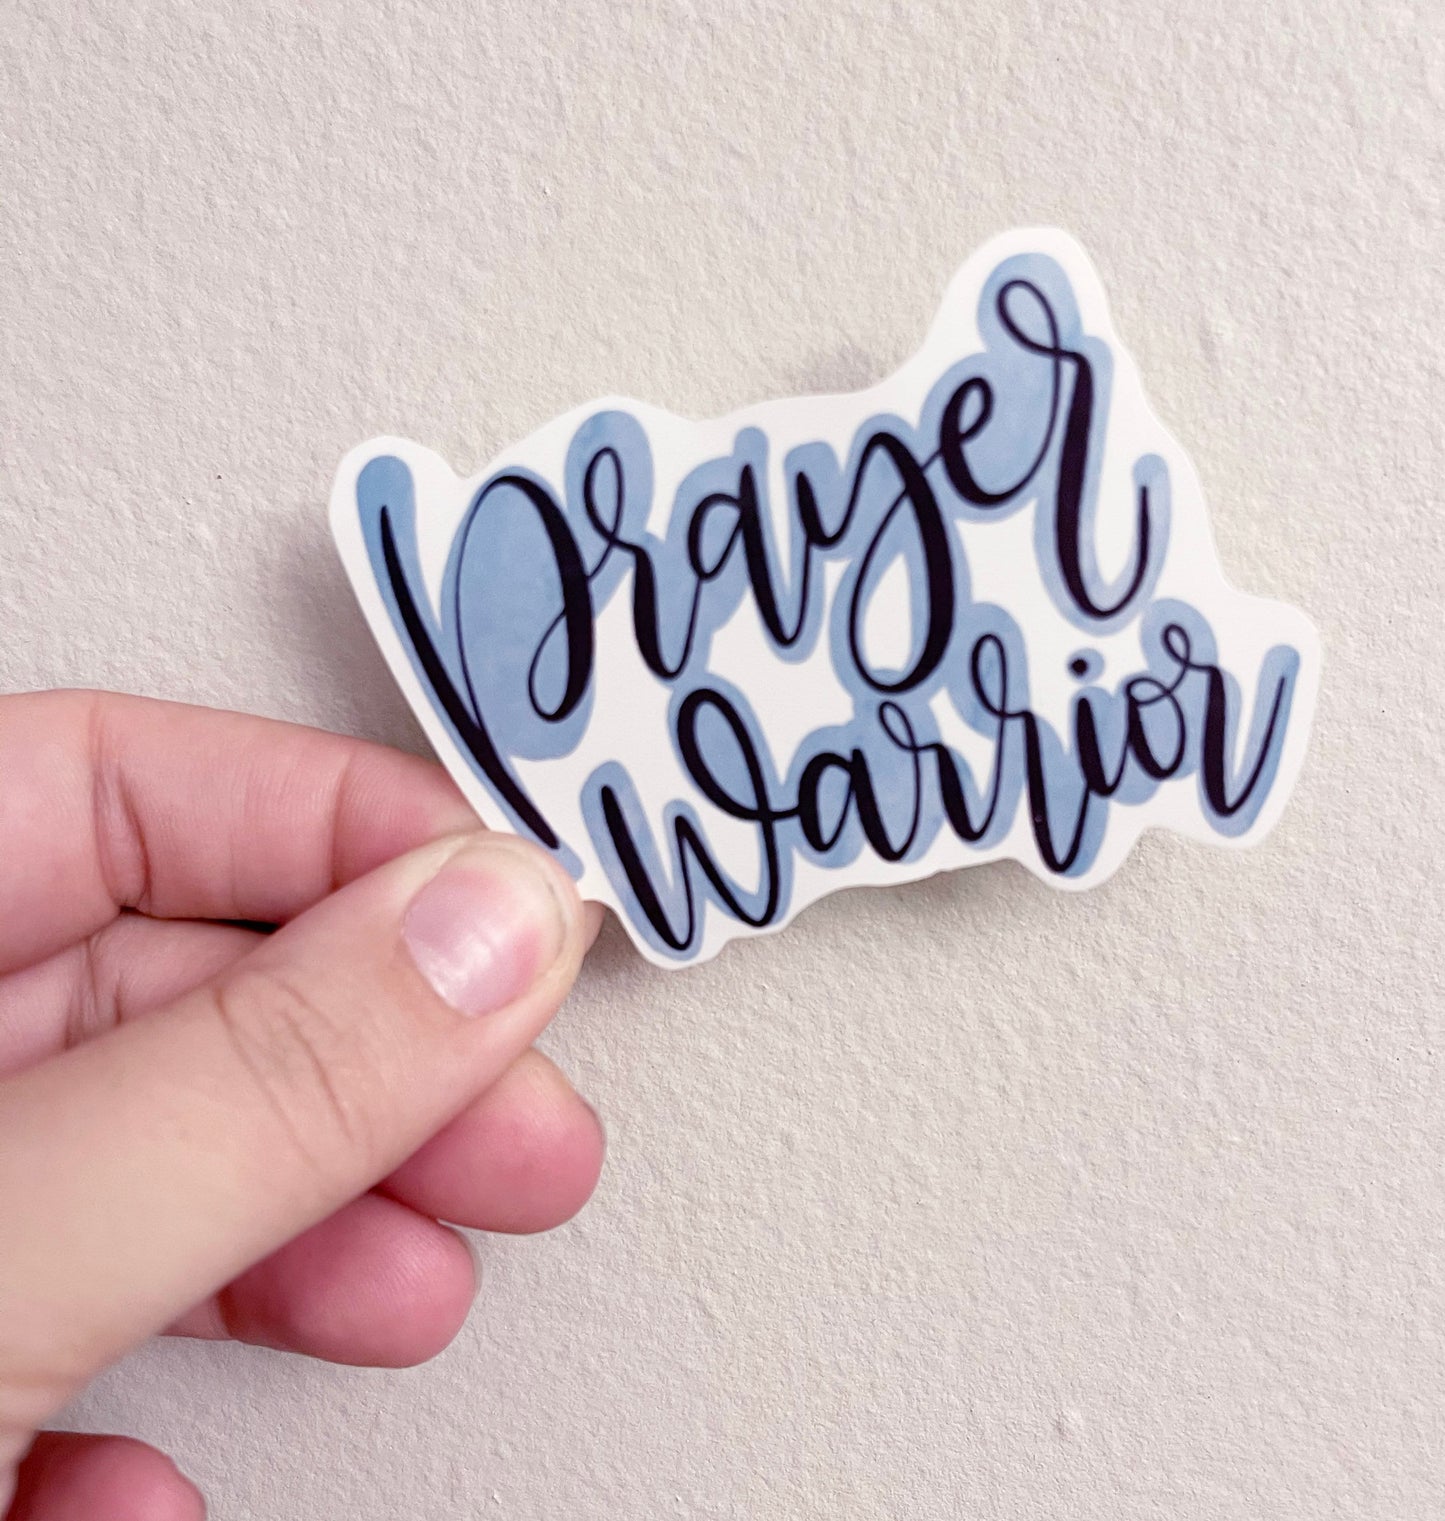 Prayer Warrior Sticker